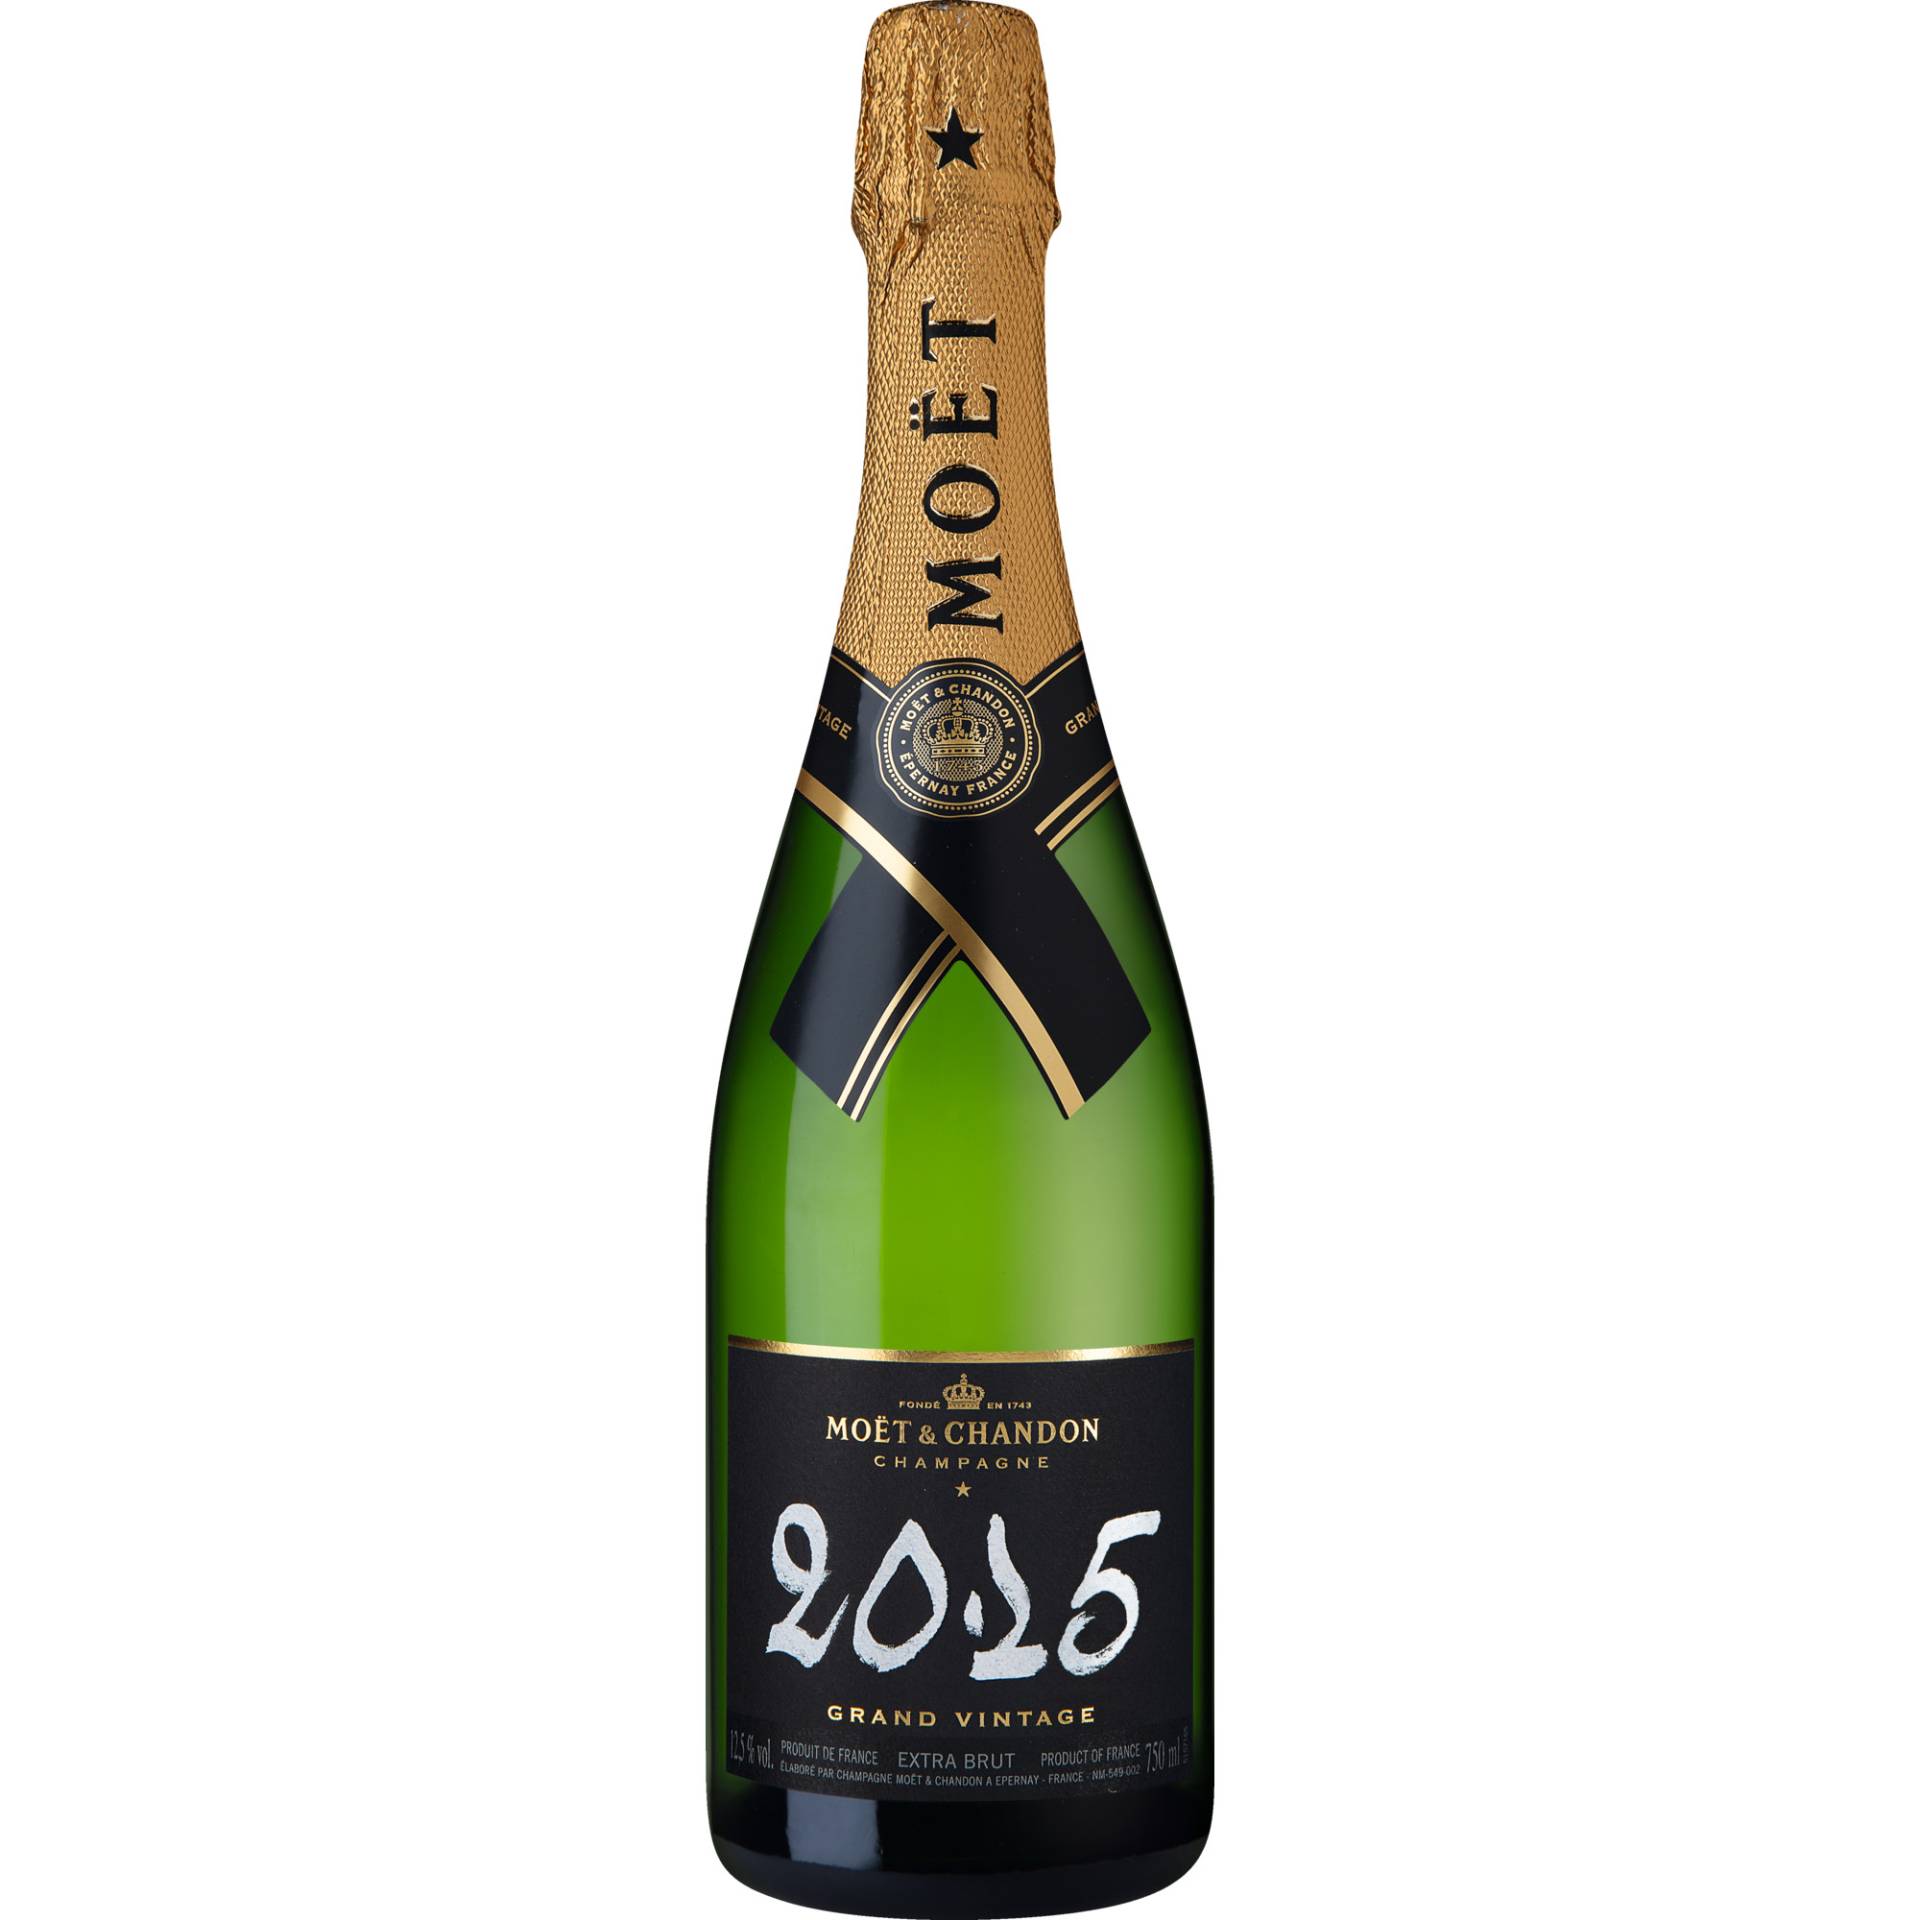 Champagne Moet & Chandon Grand Vintage, Brut, Champagne AC, Geschenketui, Champagne, 2015, Schaumwein von Champagne Moet & Chandon, 51230 Epernay, France